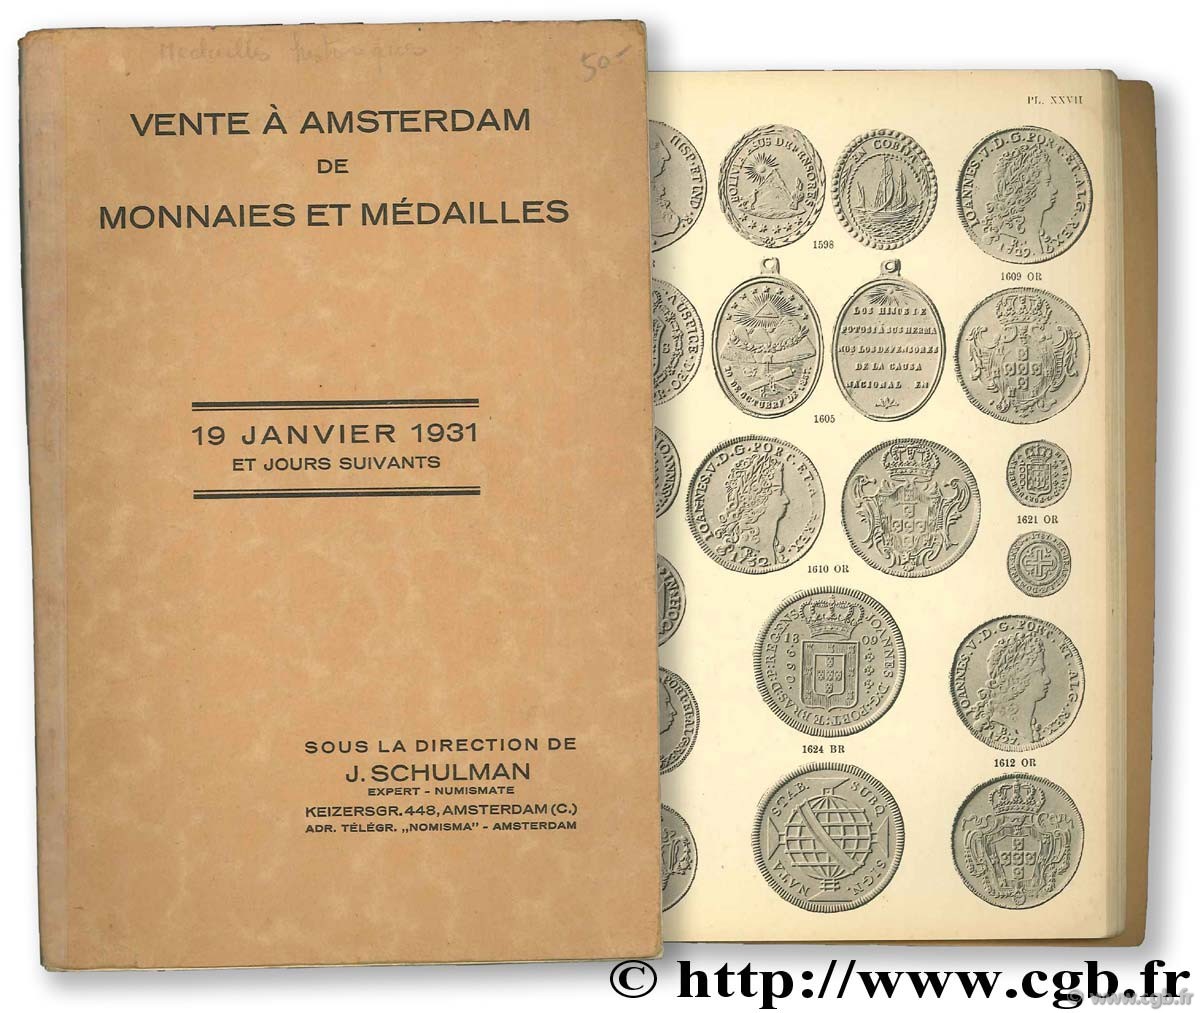 Vente à Amsterdam de monnaies et médailles, 19 janvier 1931 SCHULMAN J.